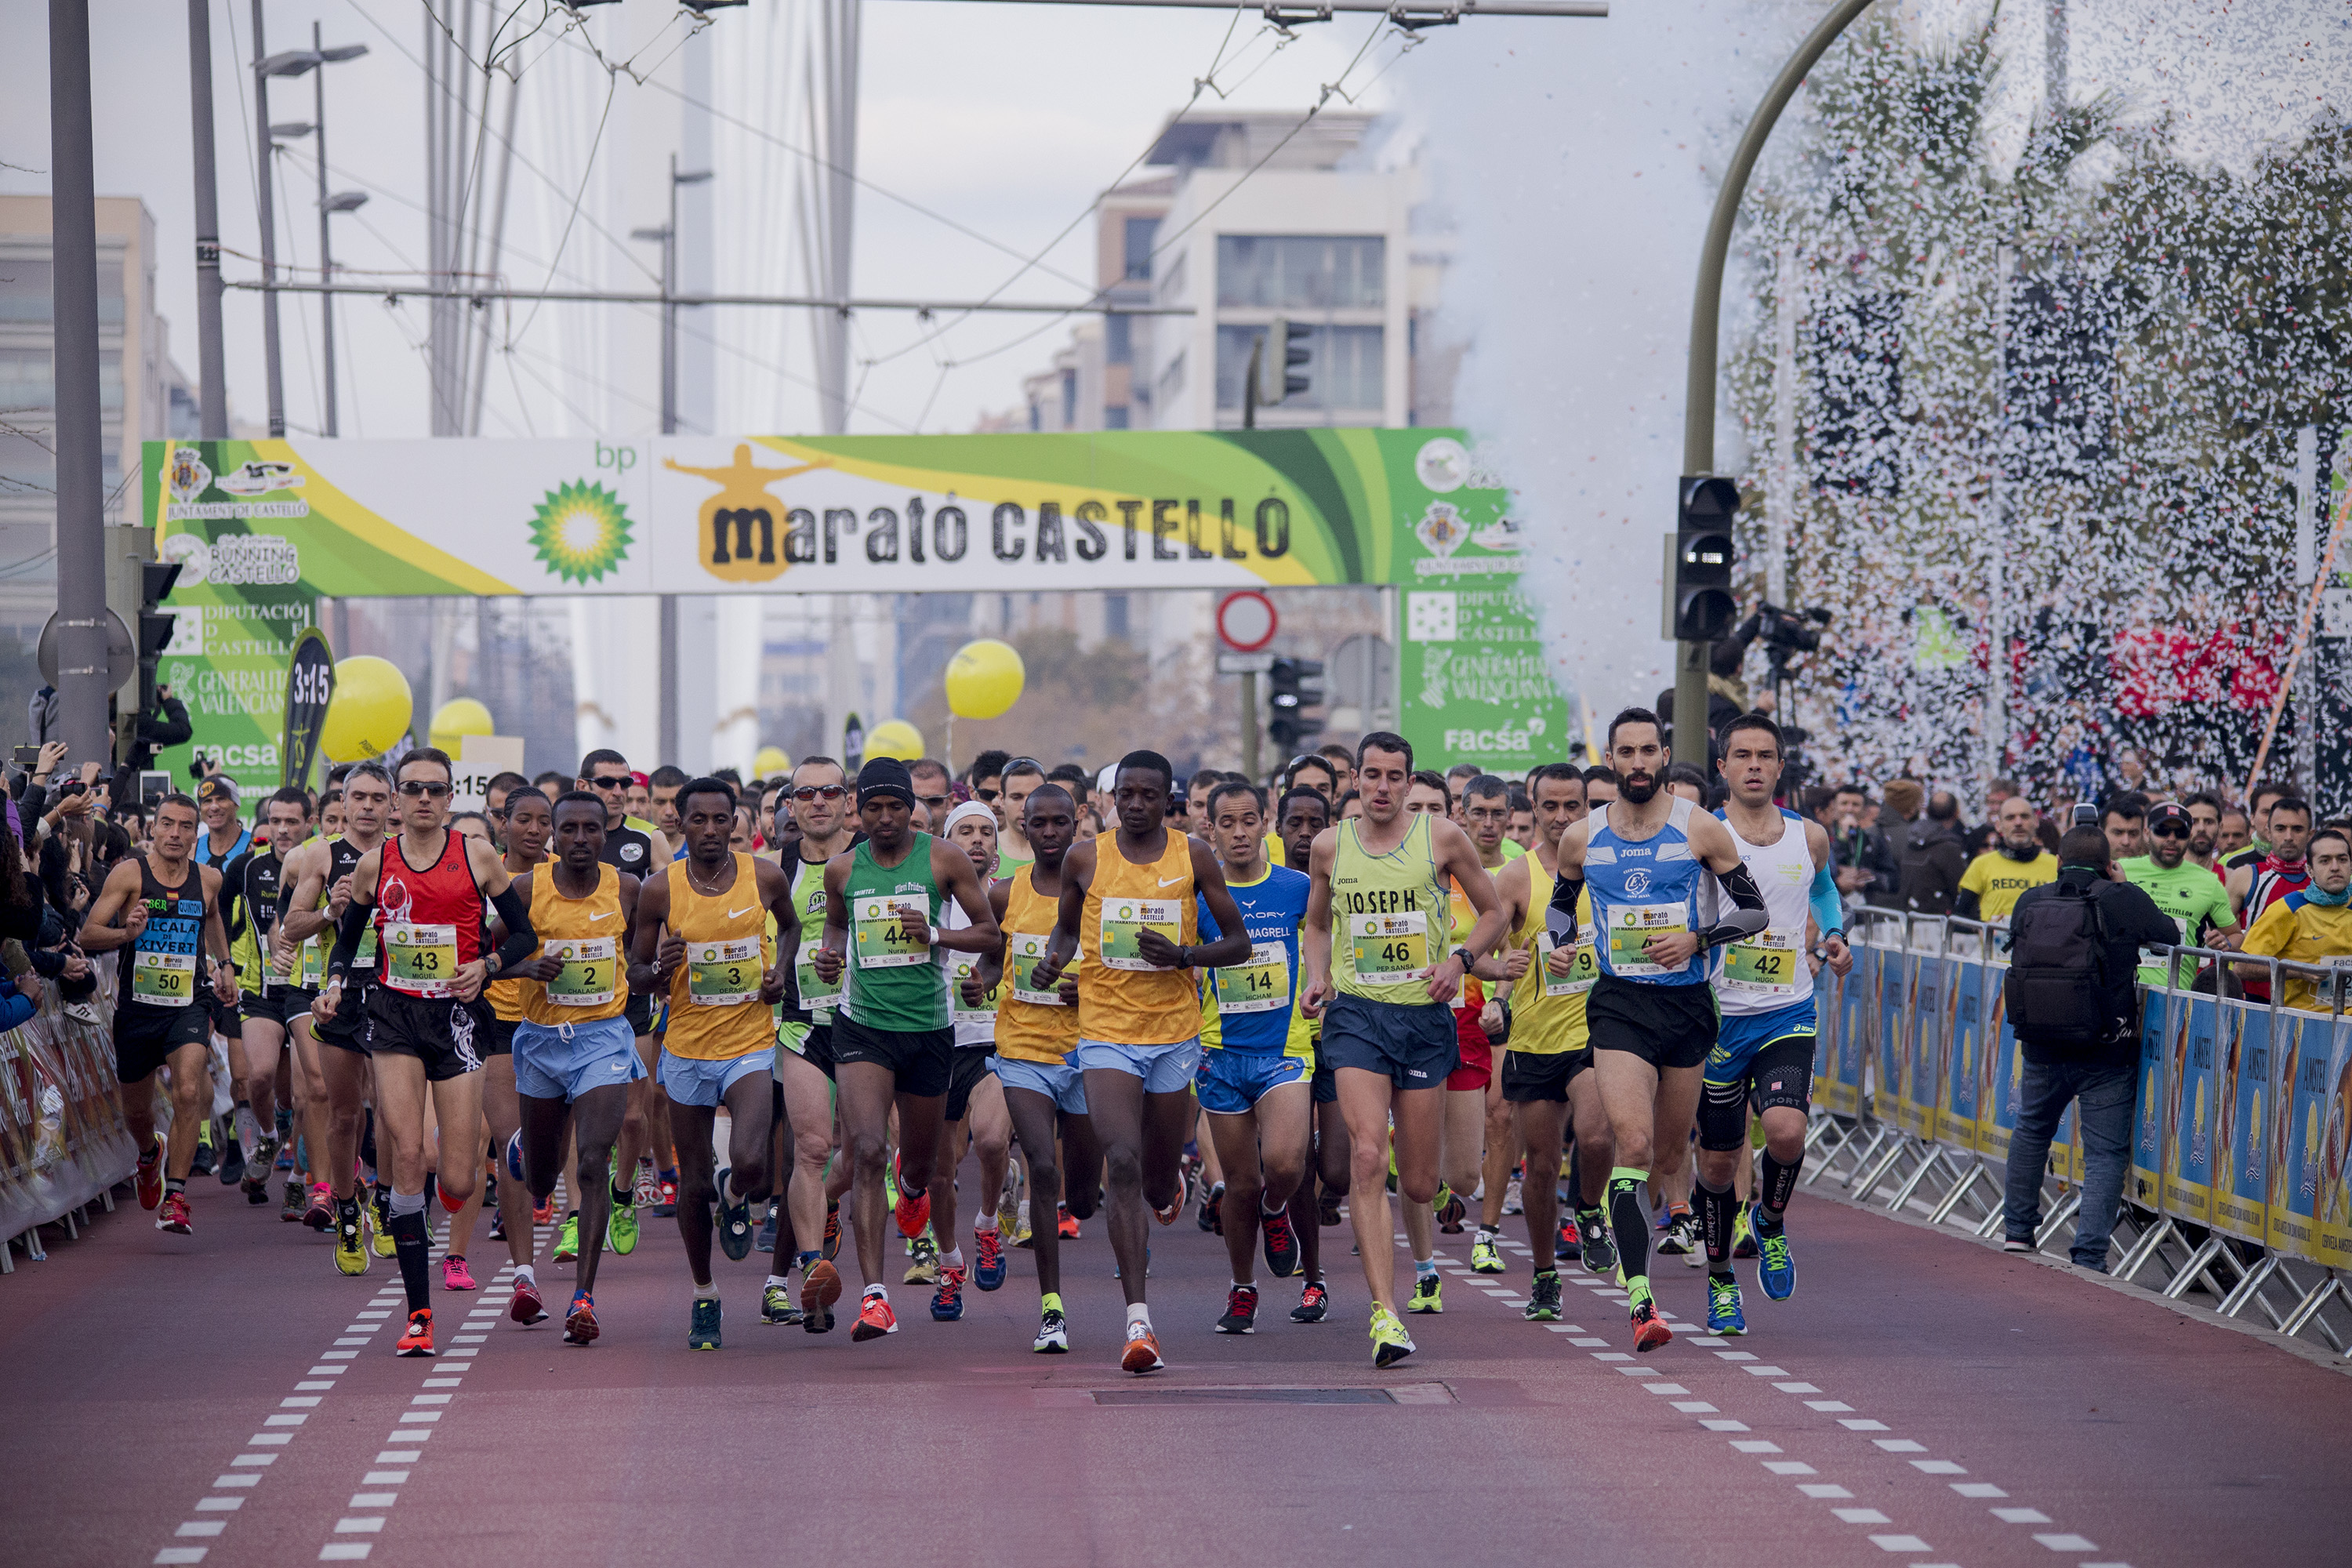 20160730 eixida marato(1).jpg